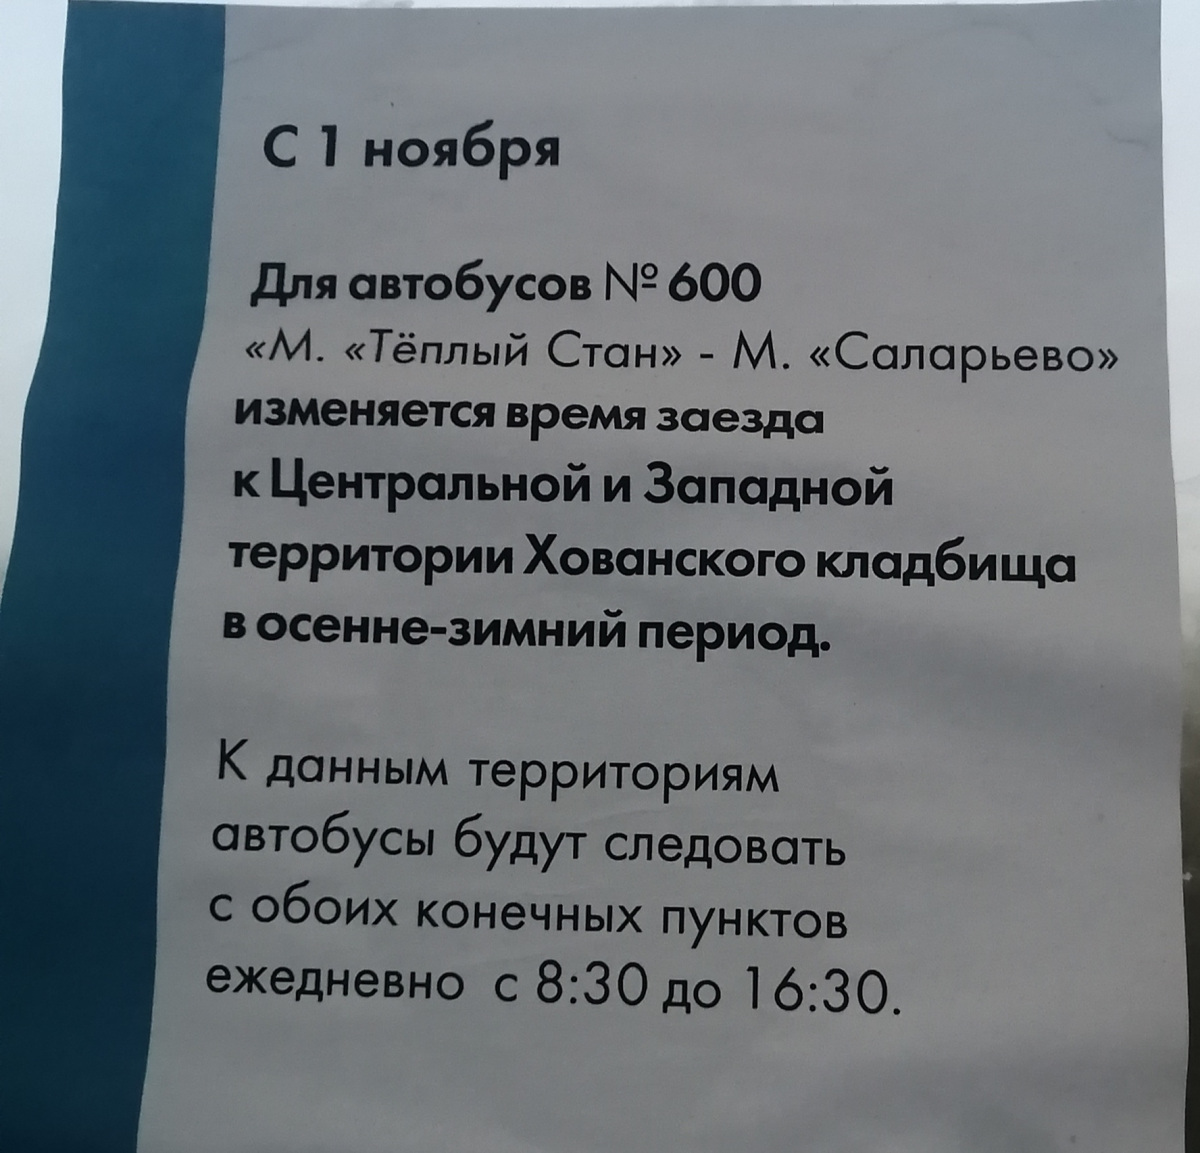 Москва. Объявление об изменении маршрута № 600